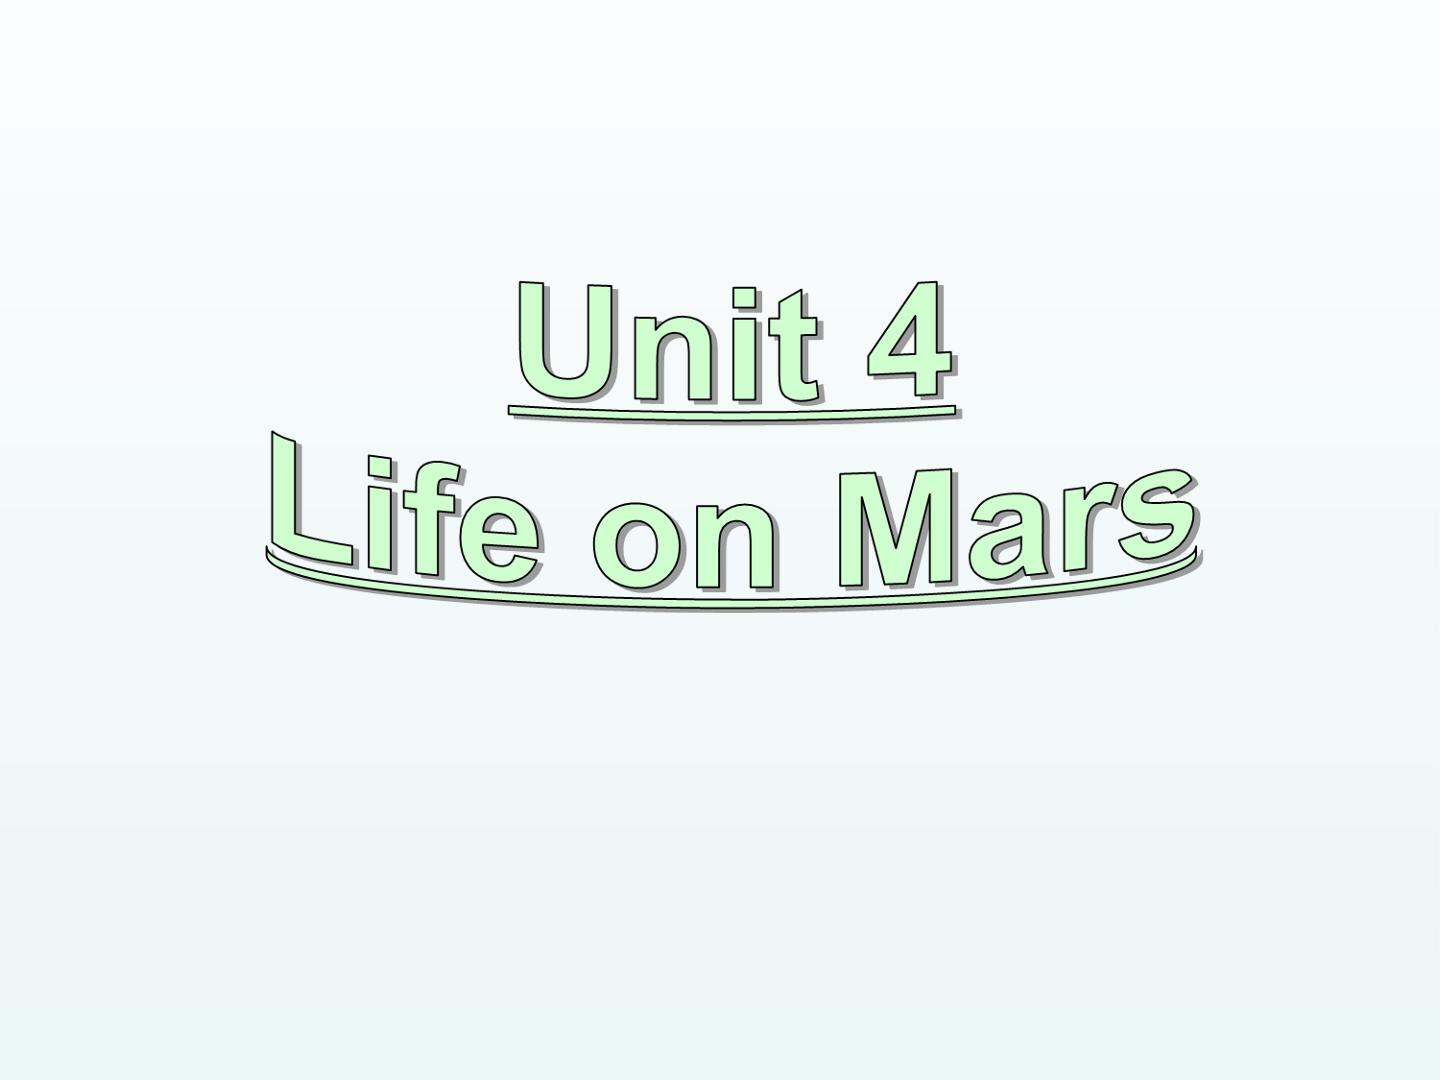 Unit 4 Life on Mars_课件1